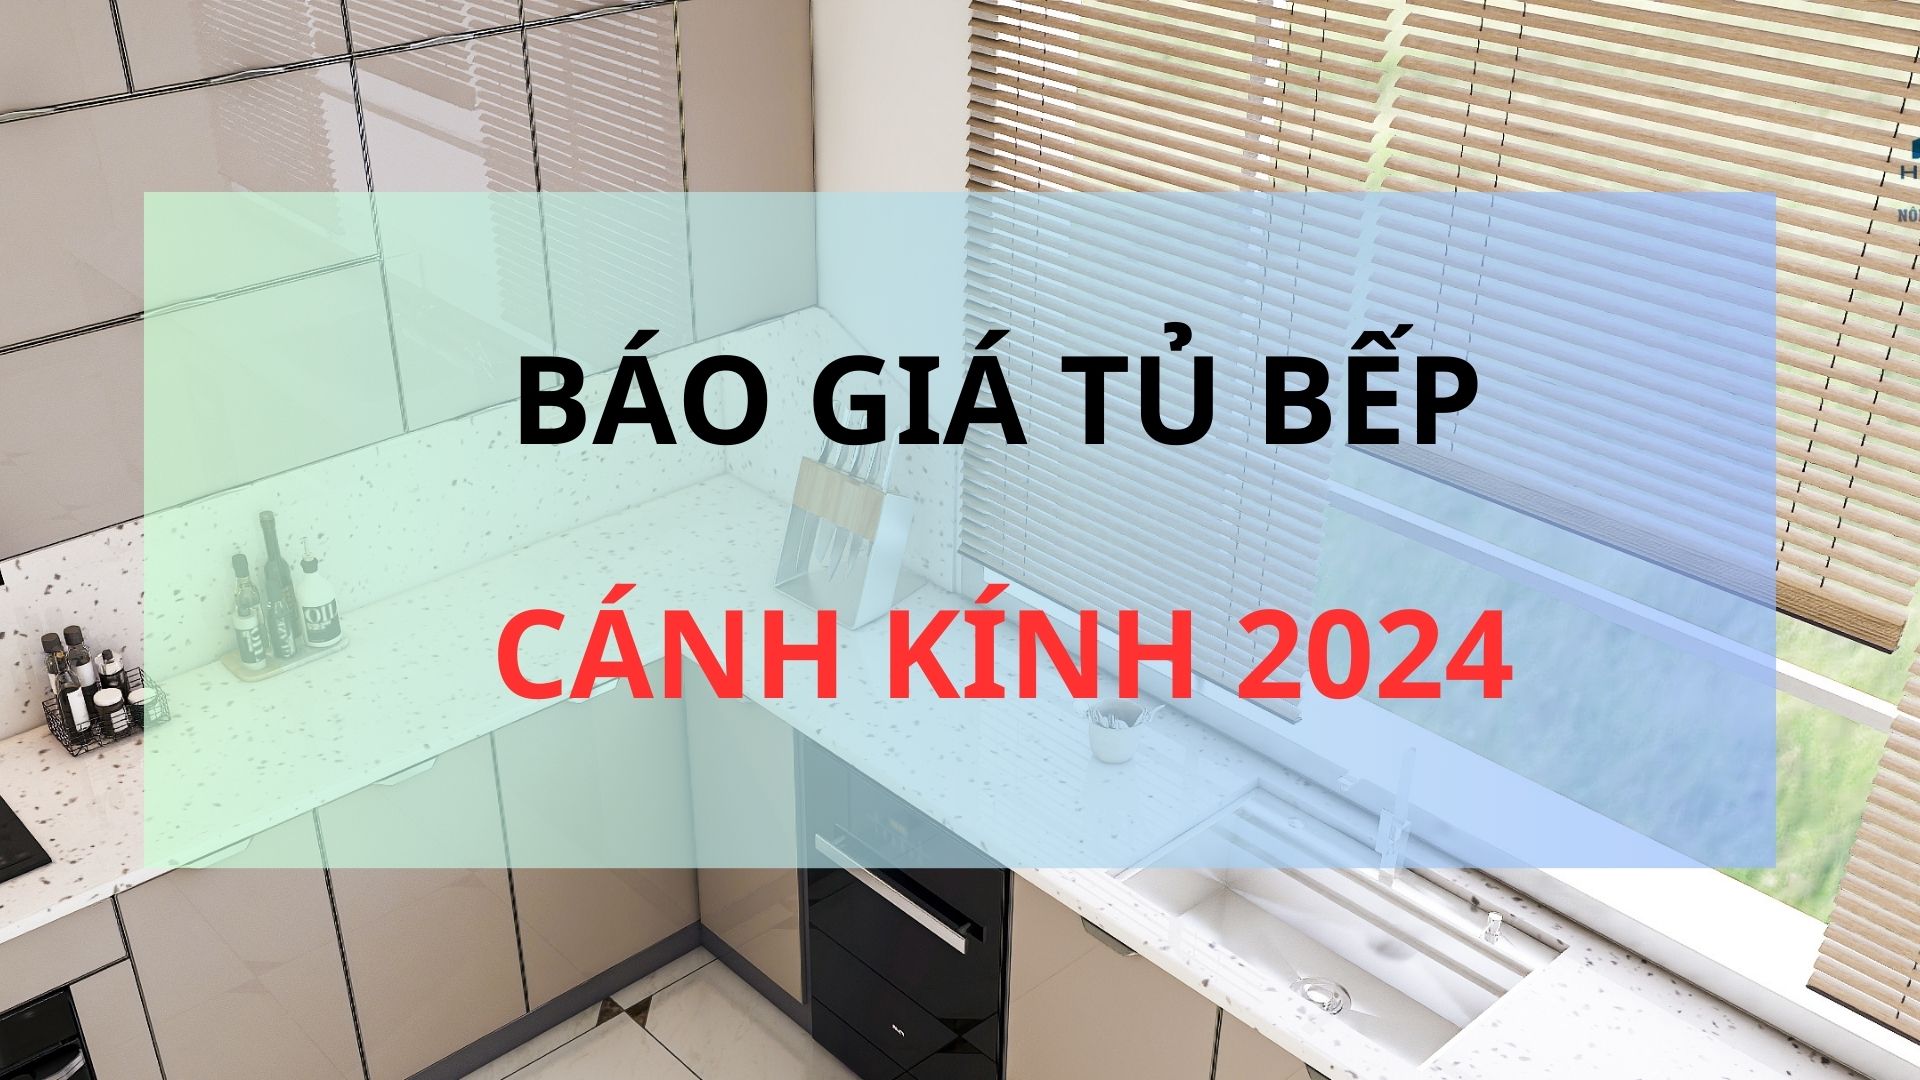 Báo giá tủ bếp Cánh kính cao cấp tại Ninh Bình 2024